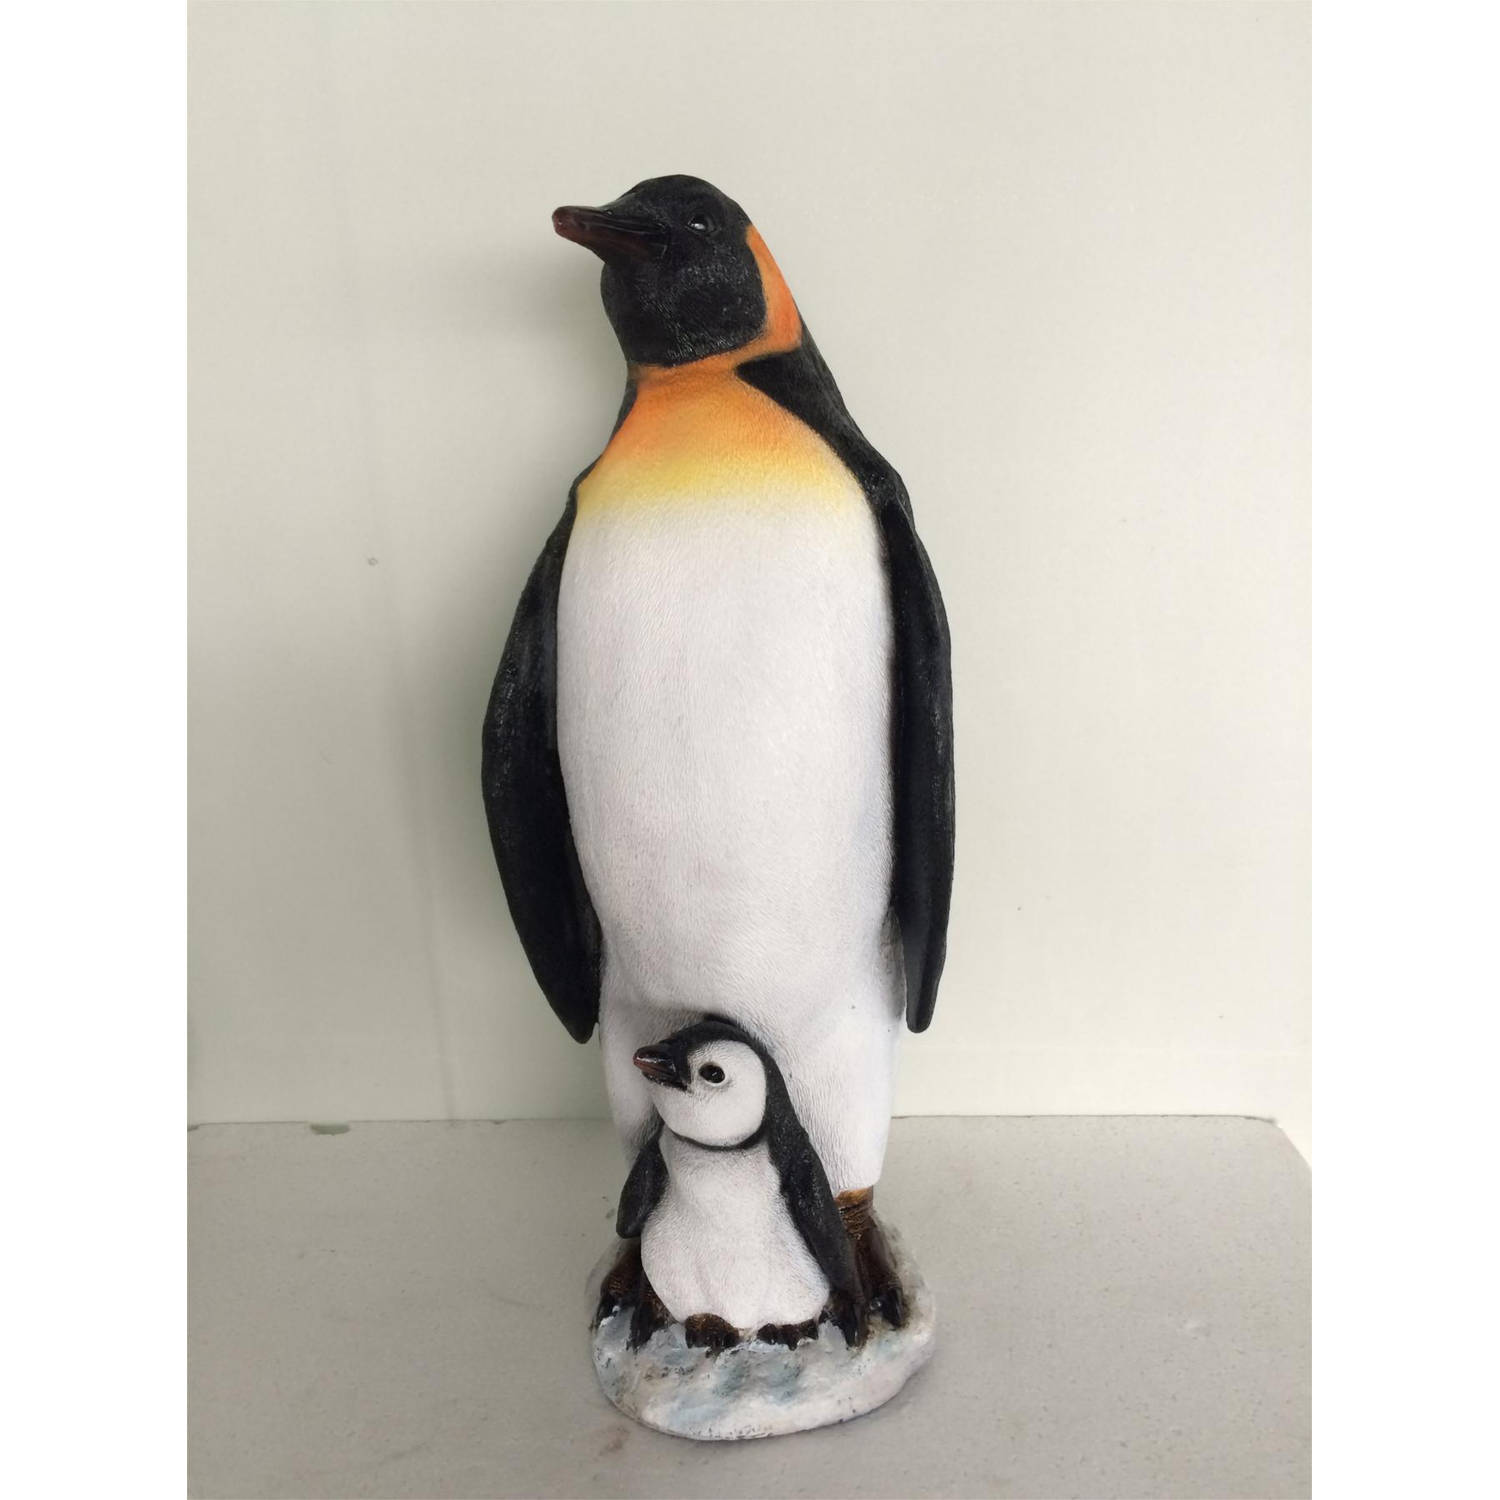 Farmwood Animals - Pinguin koningspinguin met jong 21x21x54 cm